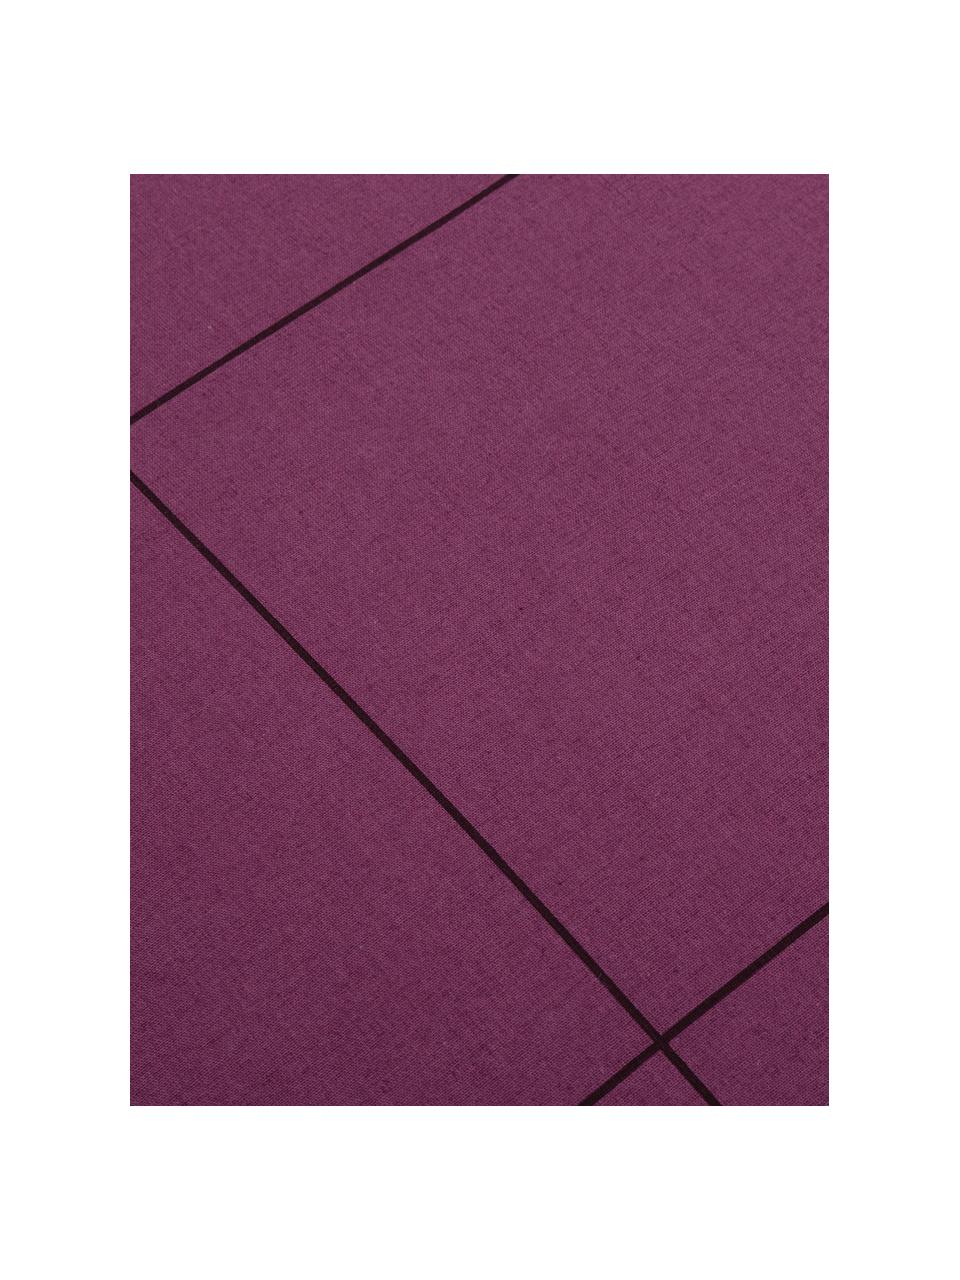 Dubbelzijdig renforcé dekbedovertrek Square Feet, Weeftechniek: renforcé, Bovenzijde: lila, violet. Onderzijde en bies: violet, 240 x 220 cm + 2 kussenhoezen 60 x 70 cm